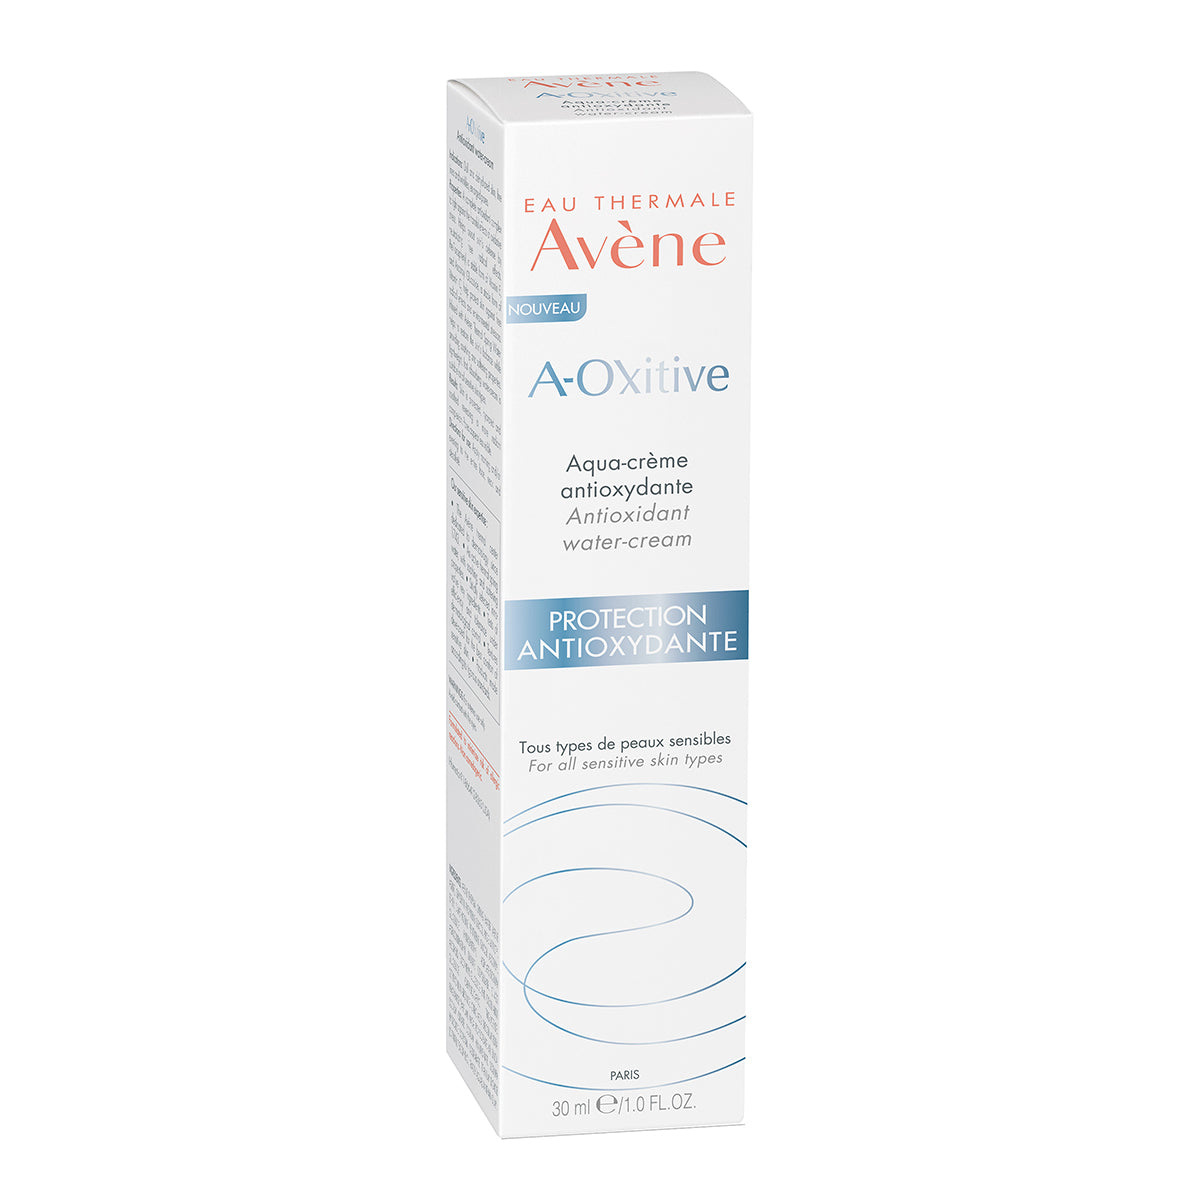 Avene A-Oxitive Aqua crema, hidrata, suaviza y proporciona una barrera contra la contaminación sin renunciar al confort 30ml.